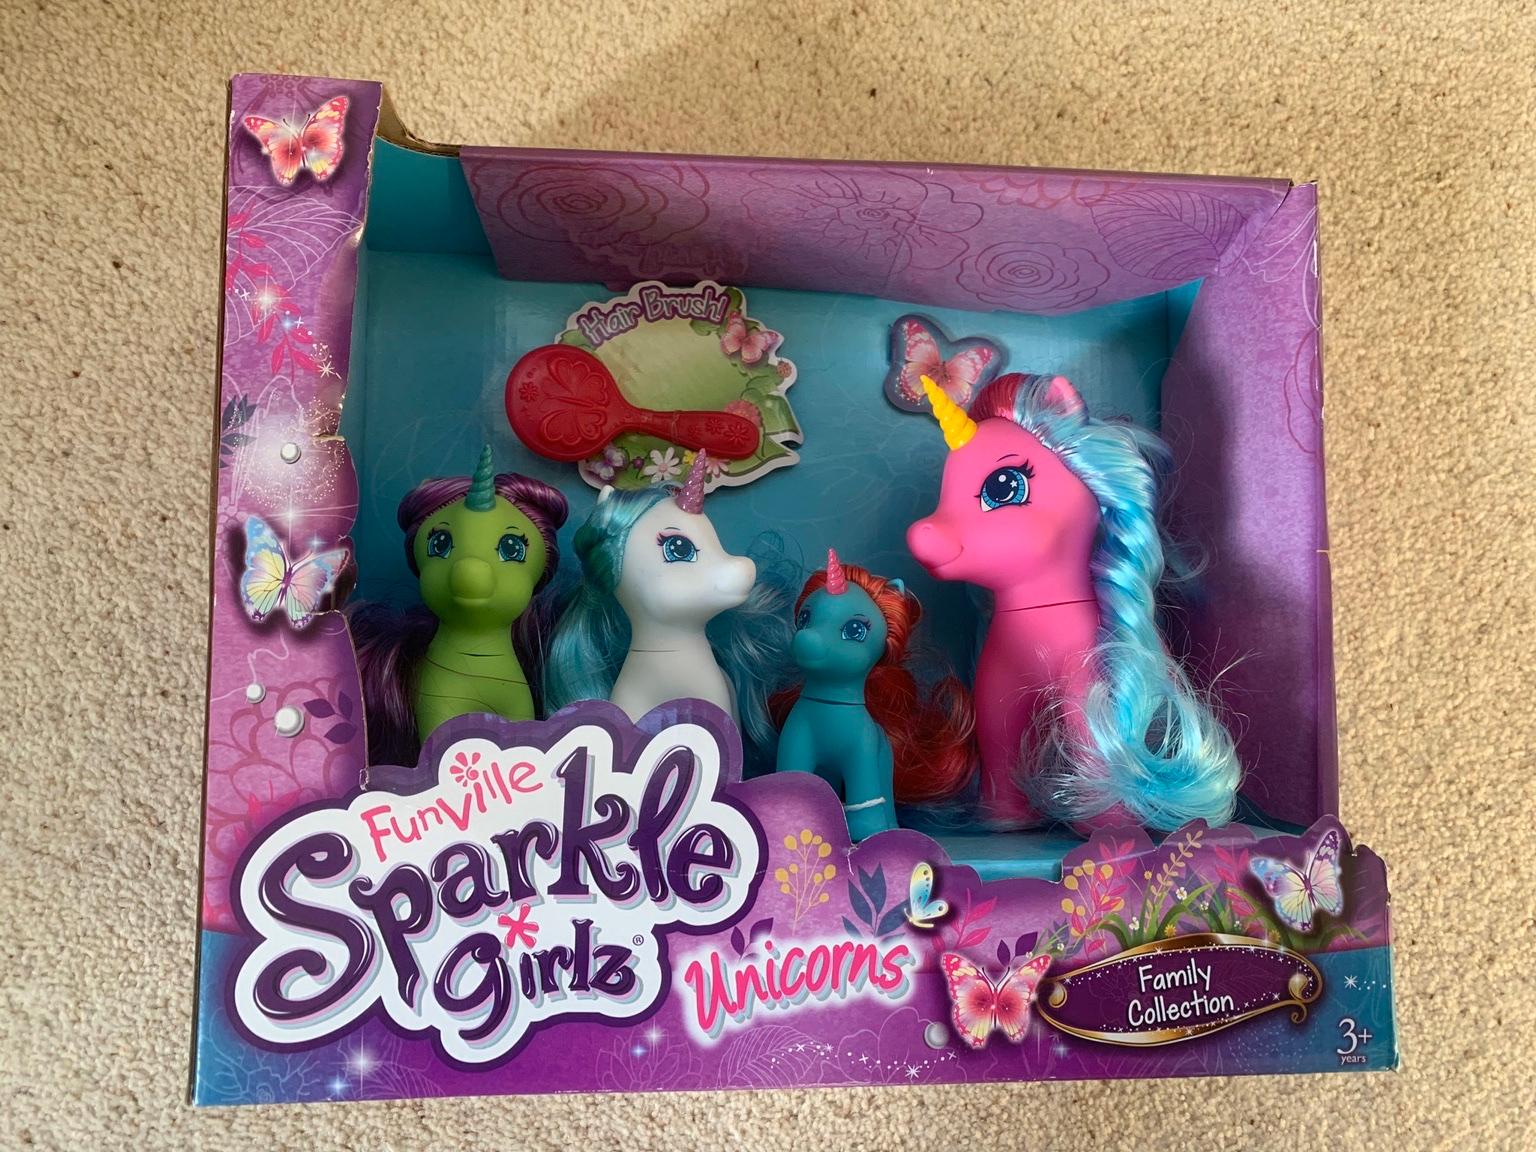 sparkle girlz unicorn